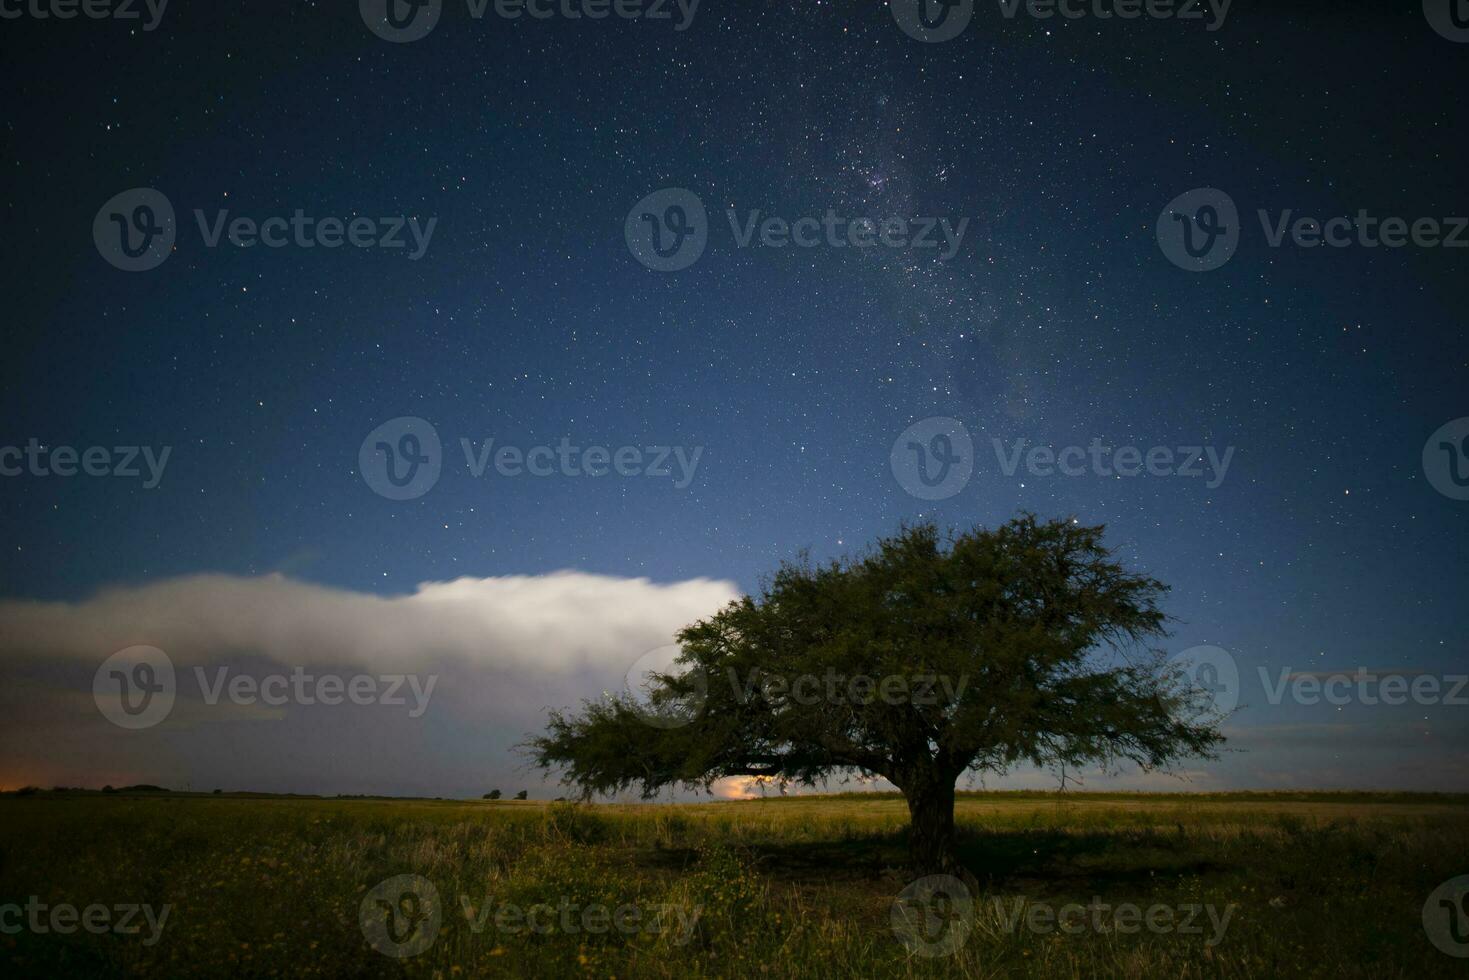 pampas landskap fotograferad på natt med en starry himmel, la pampa provins, patagonien , argentina. foto